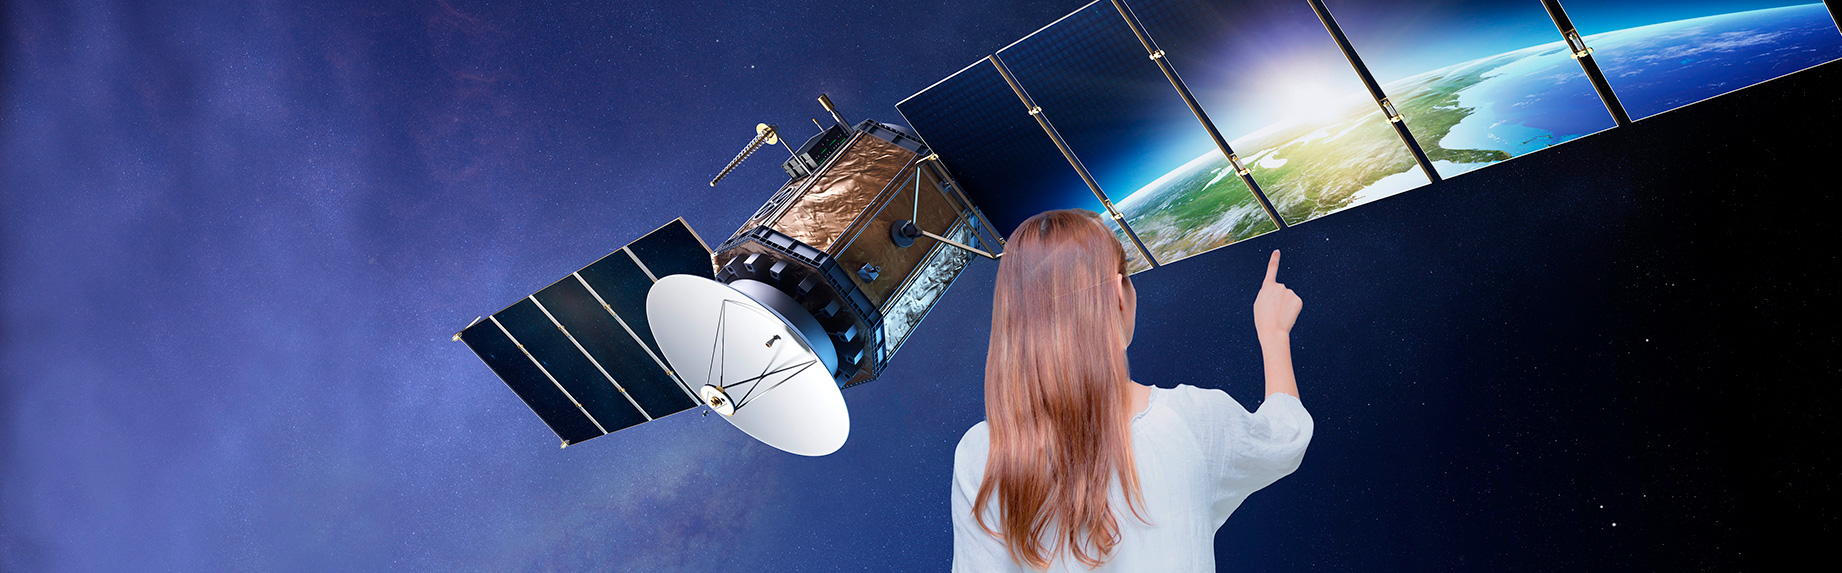 Fotomontage: Junge Frau in Rückensicht zeigt auf Nahaufnahme eines Satelliten im Weltraum.